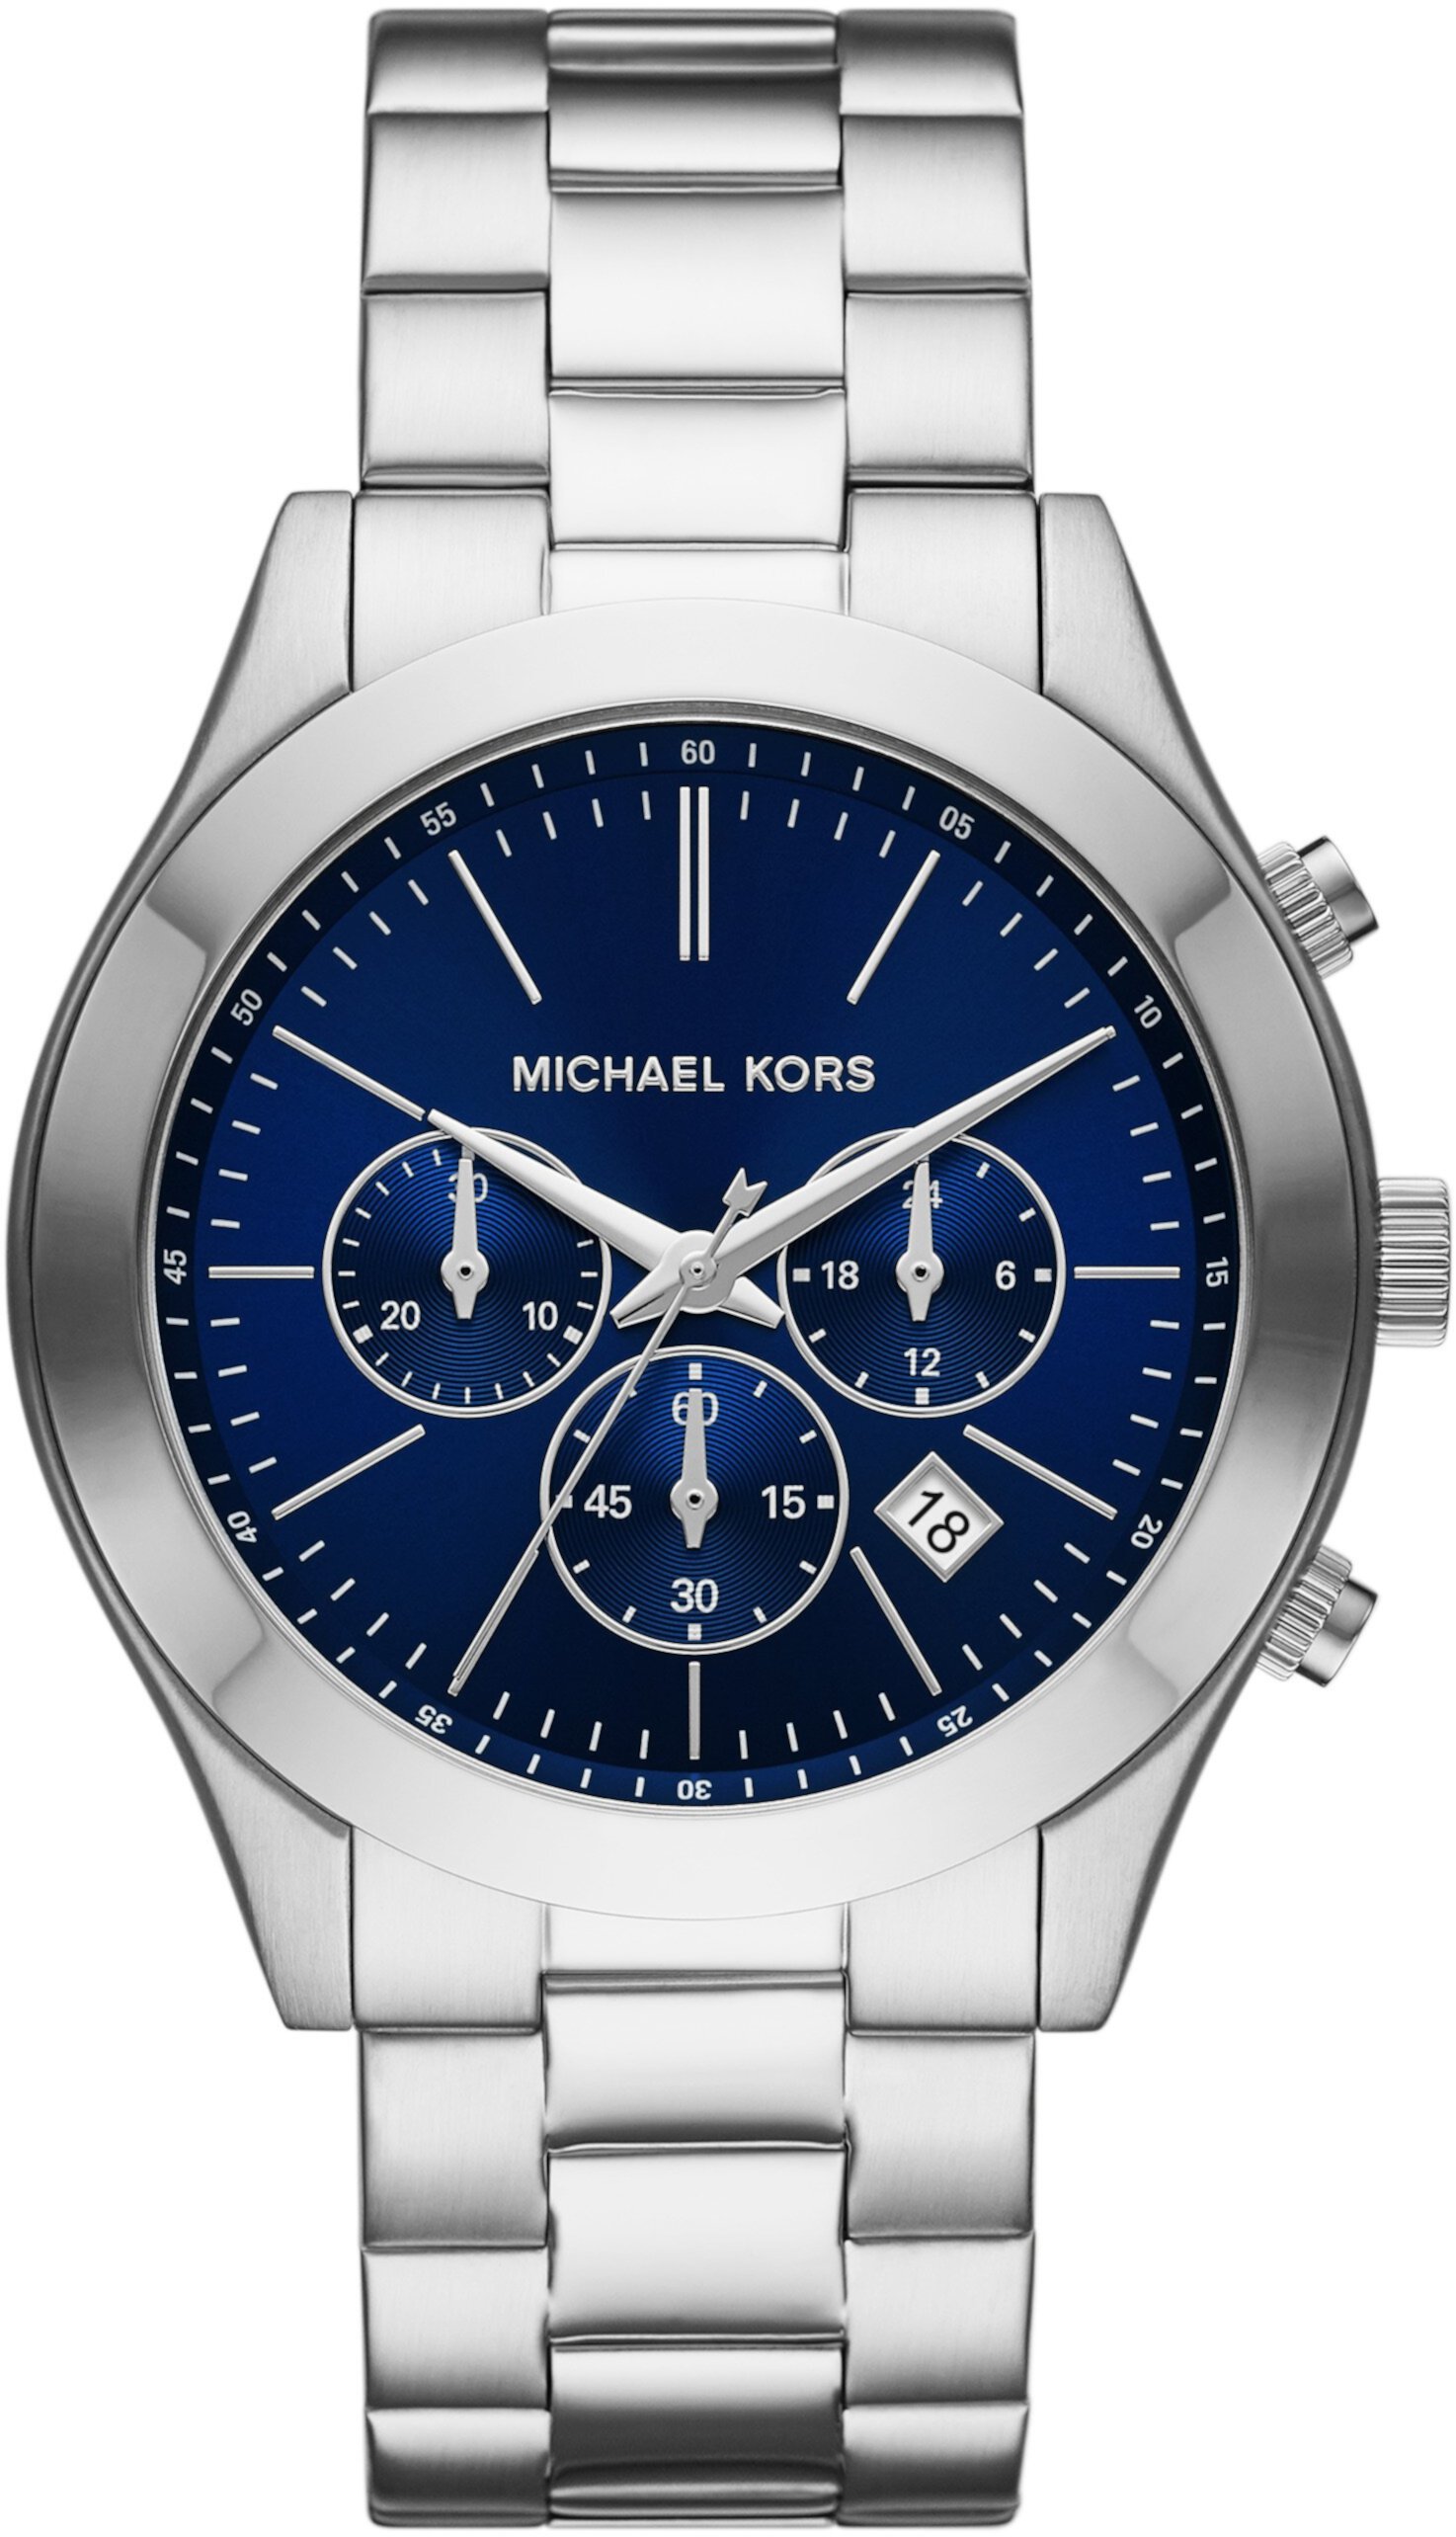 MK8917 - Тонкие часы с хронографом из нержавеющей стали для подиума Michael Kors